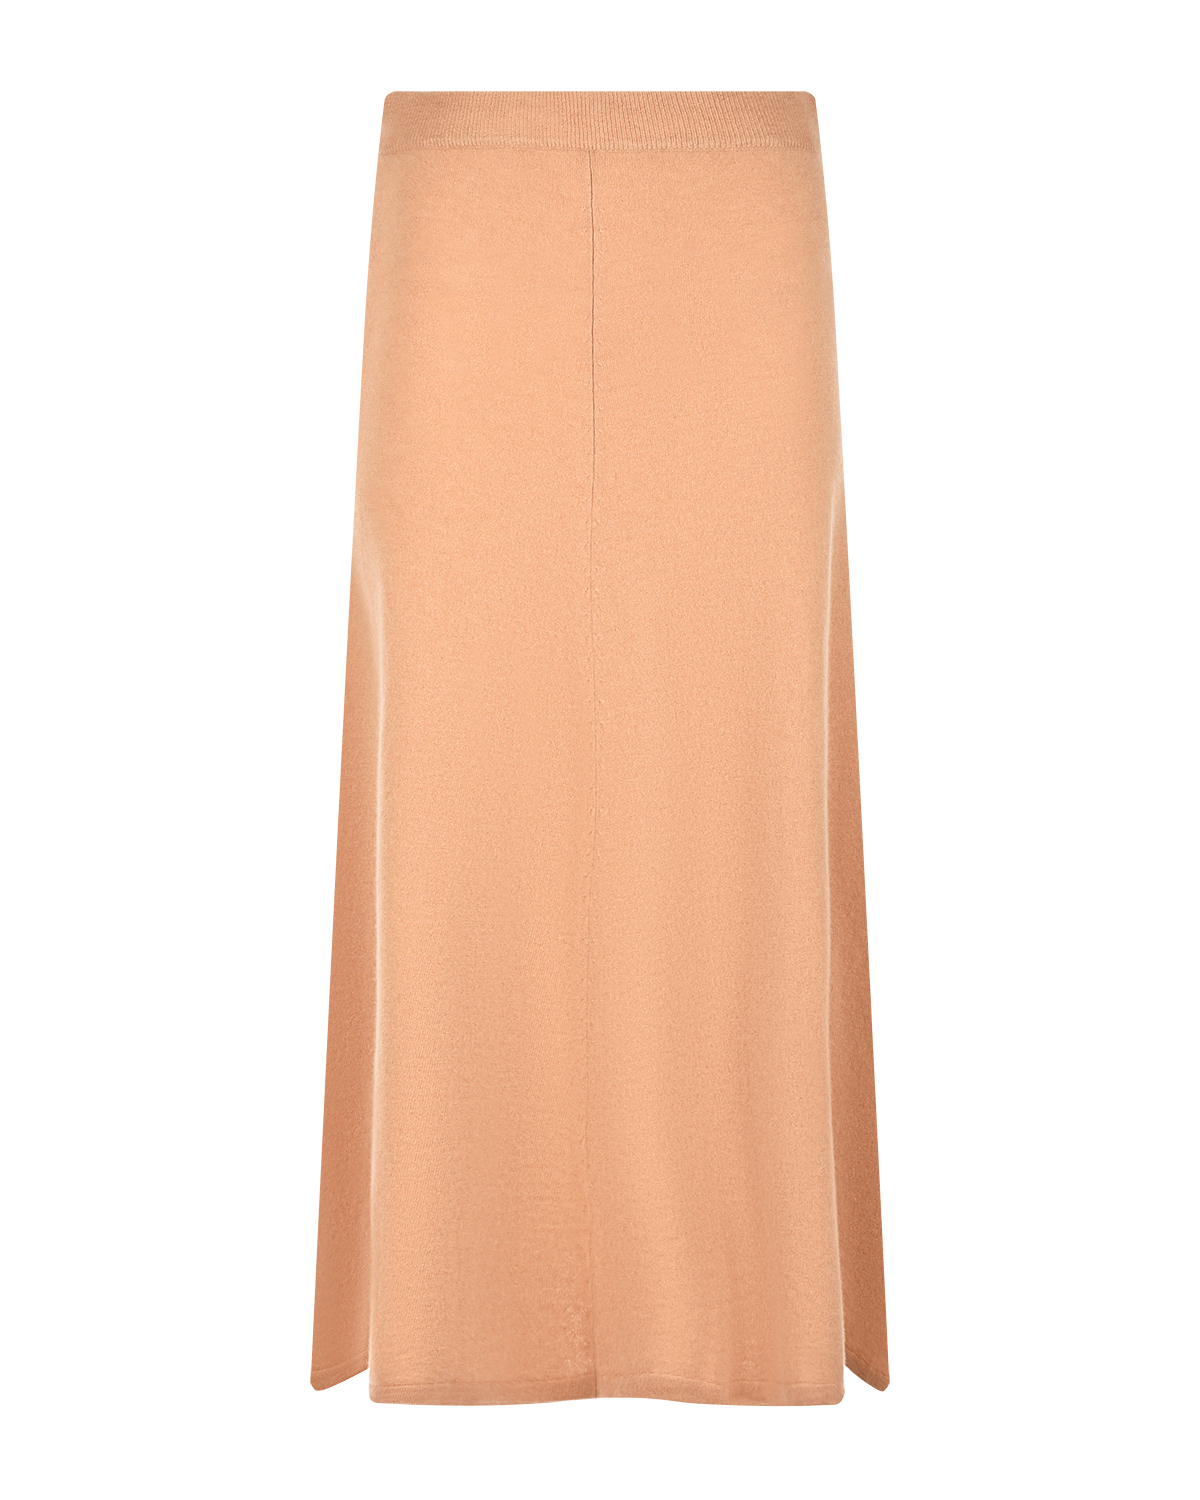 Коричневая юбка из кашемира Arch4, размер 40, цвет коричневый - фото 1